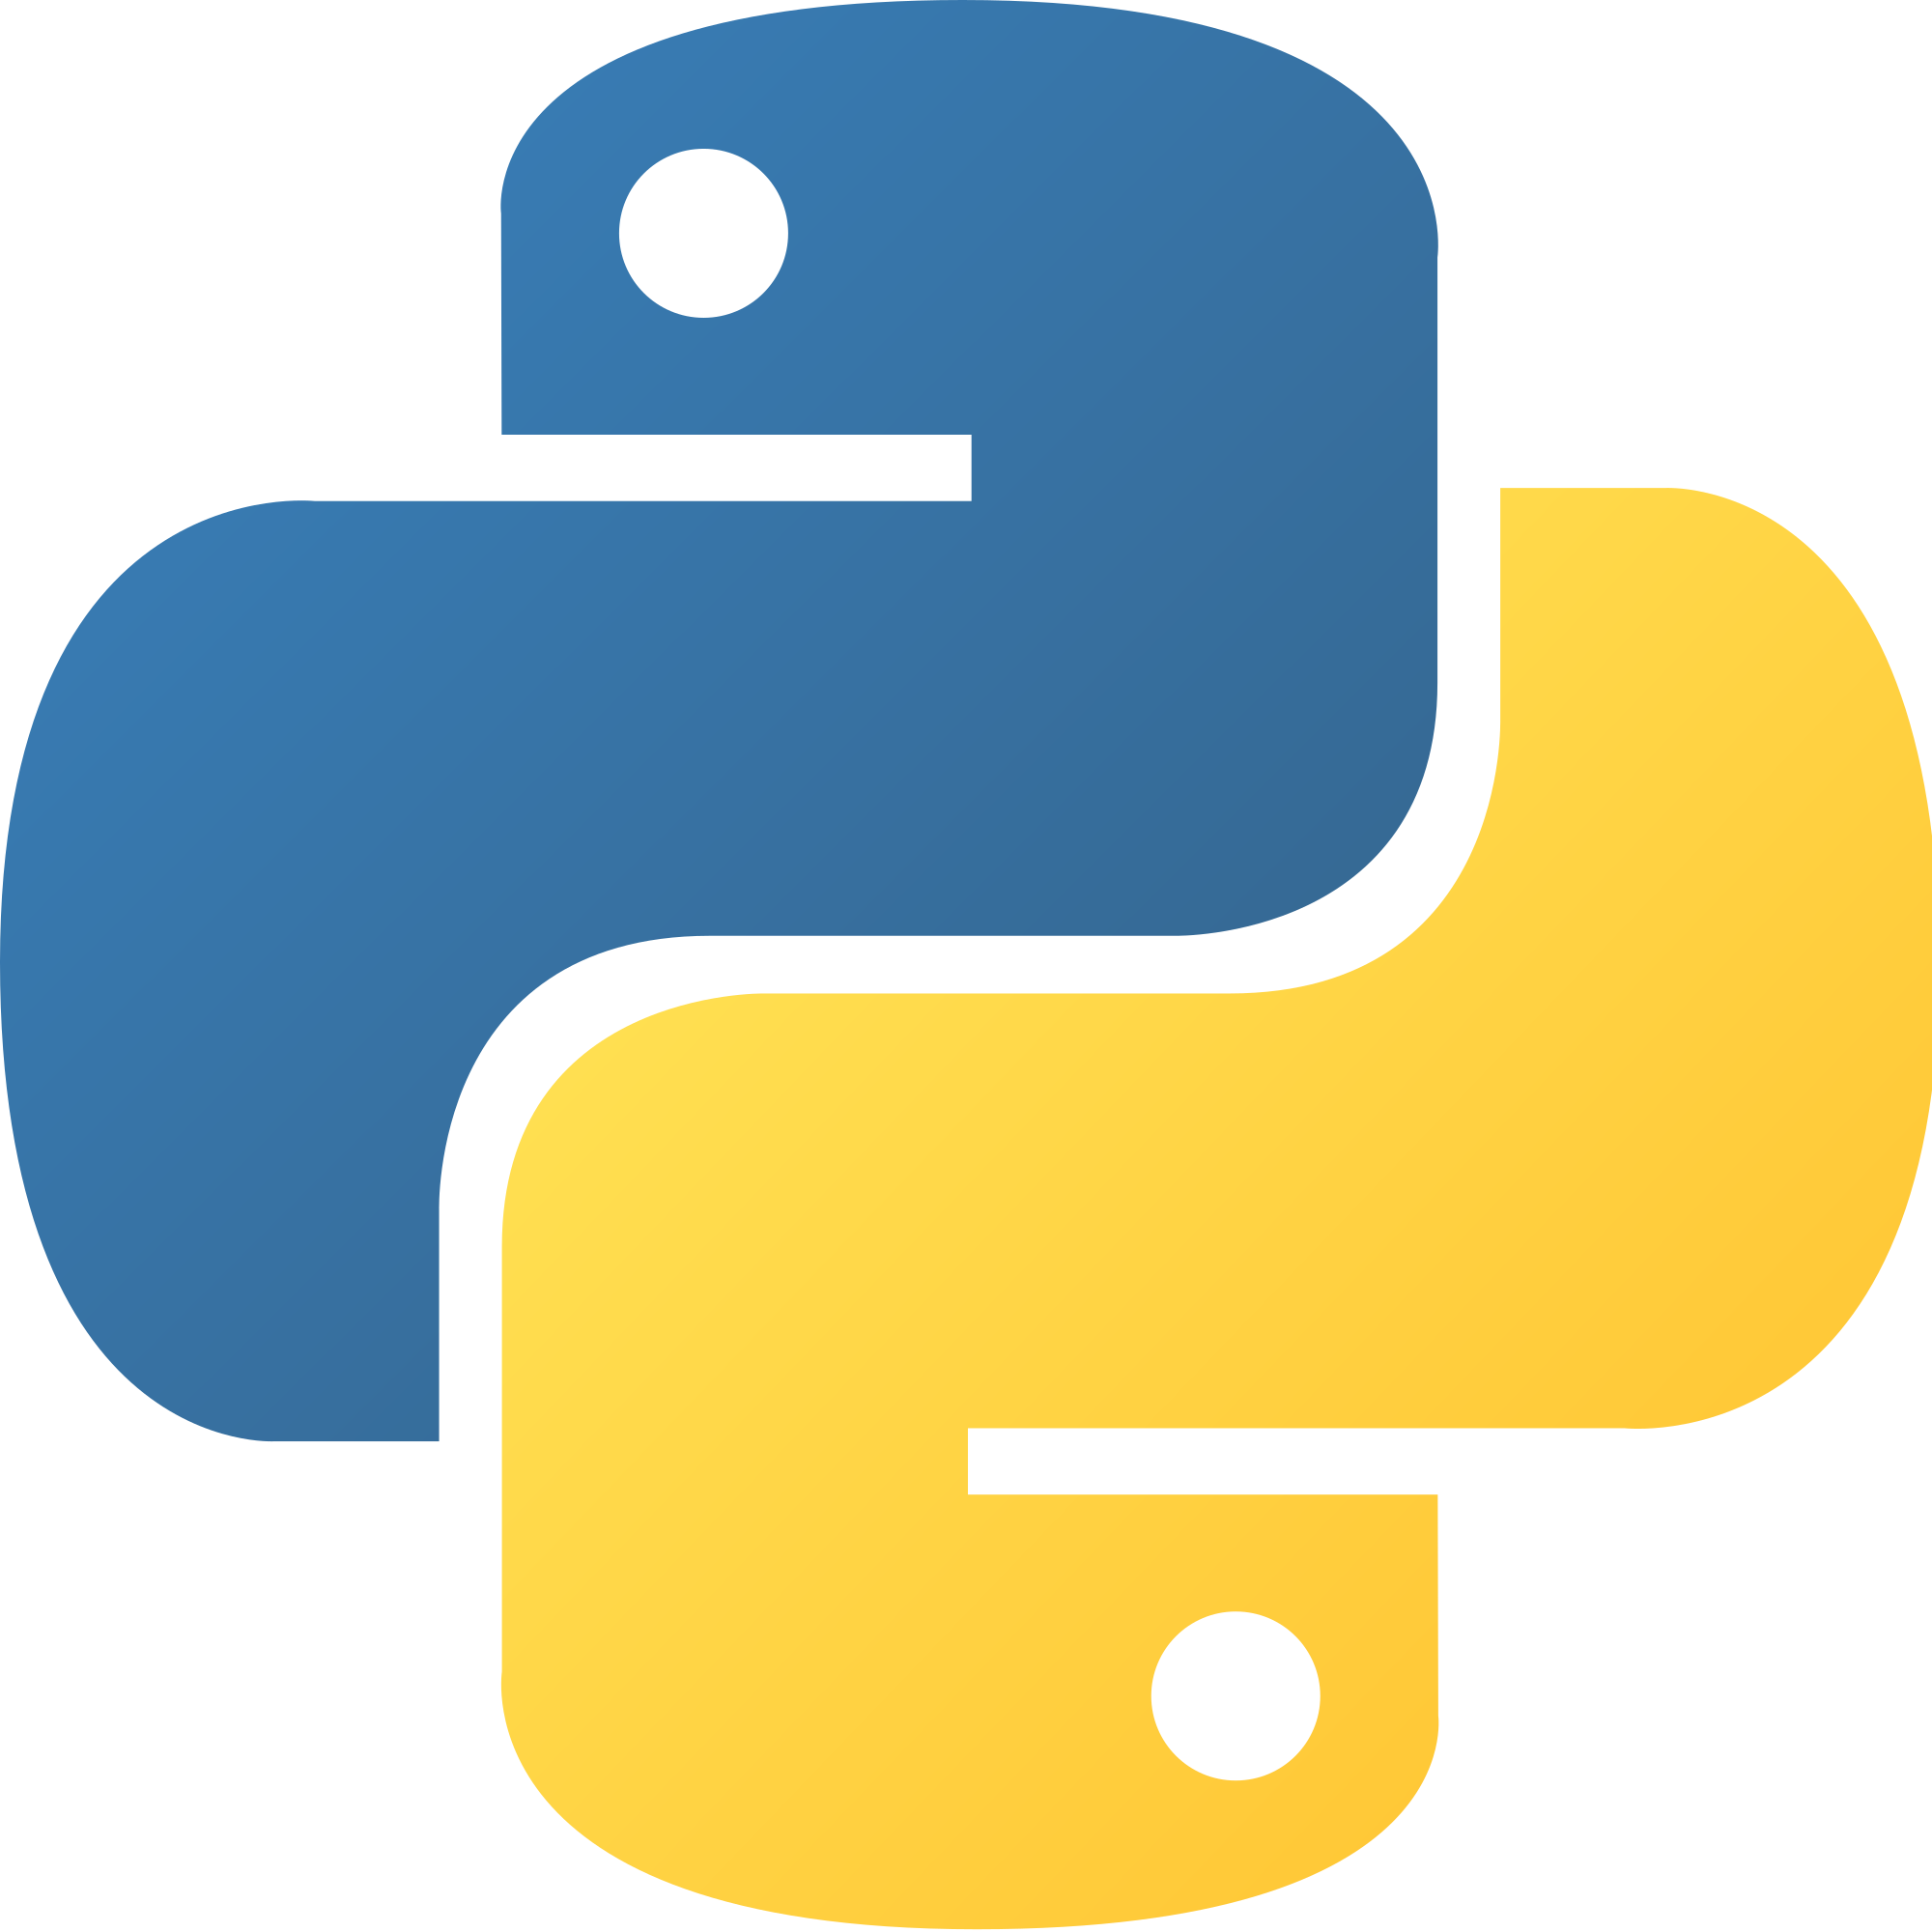 Python Developer, Full-Time Job in London – Full-Remote